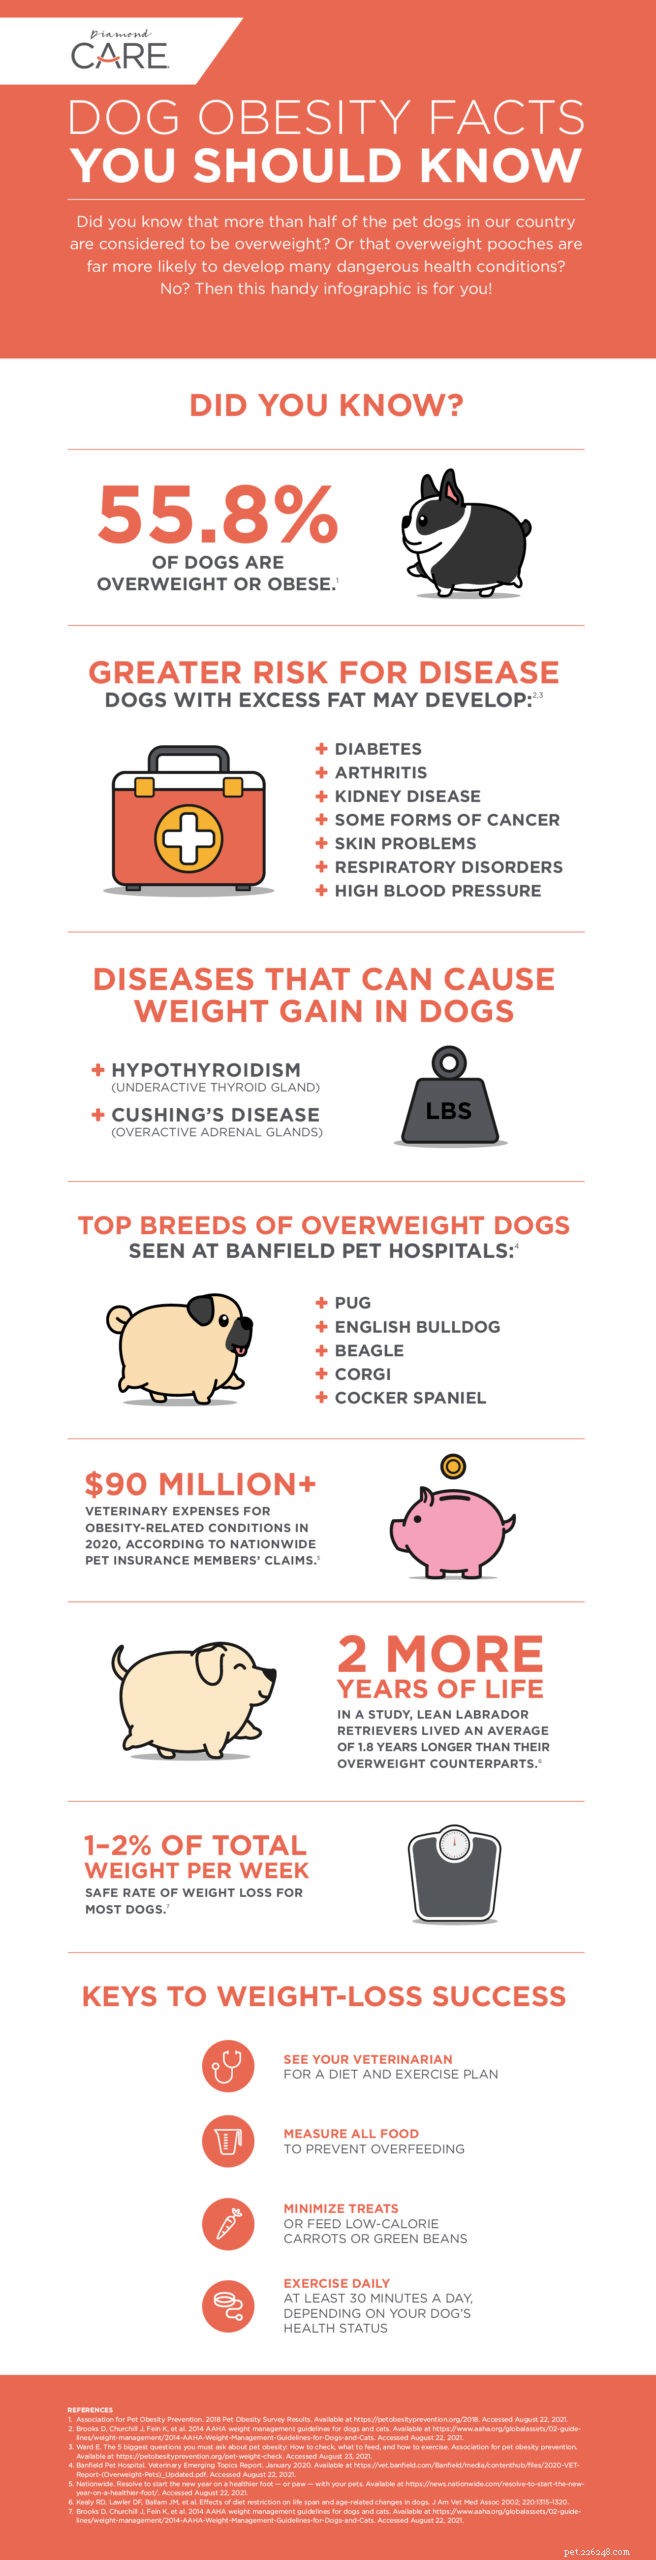 Diffuser quelques faits sur l obésité canine